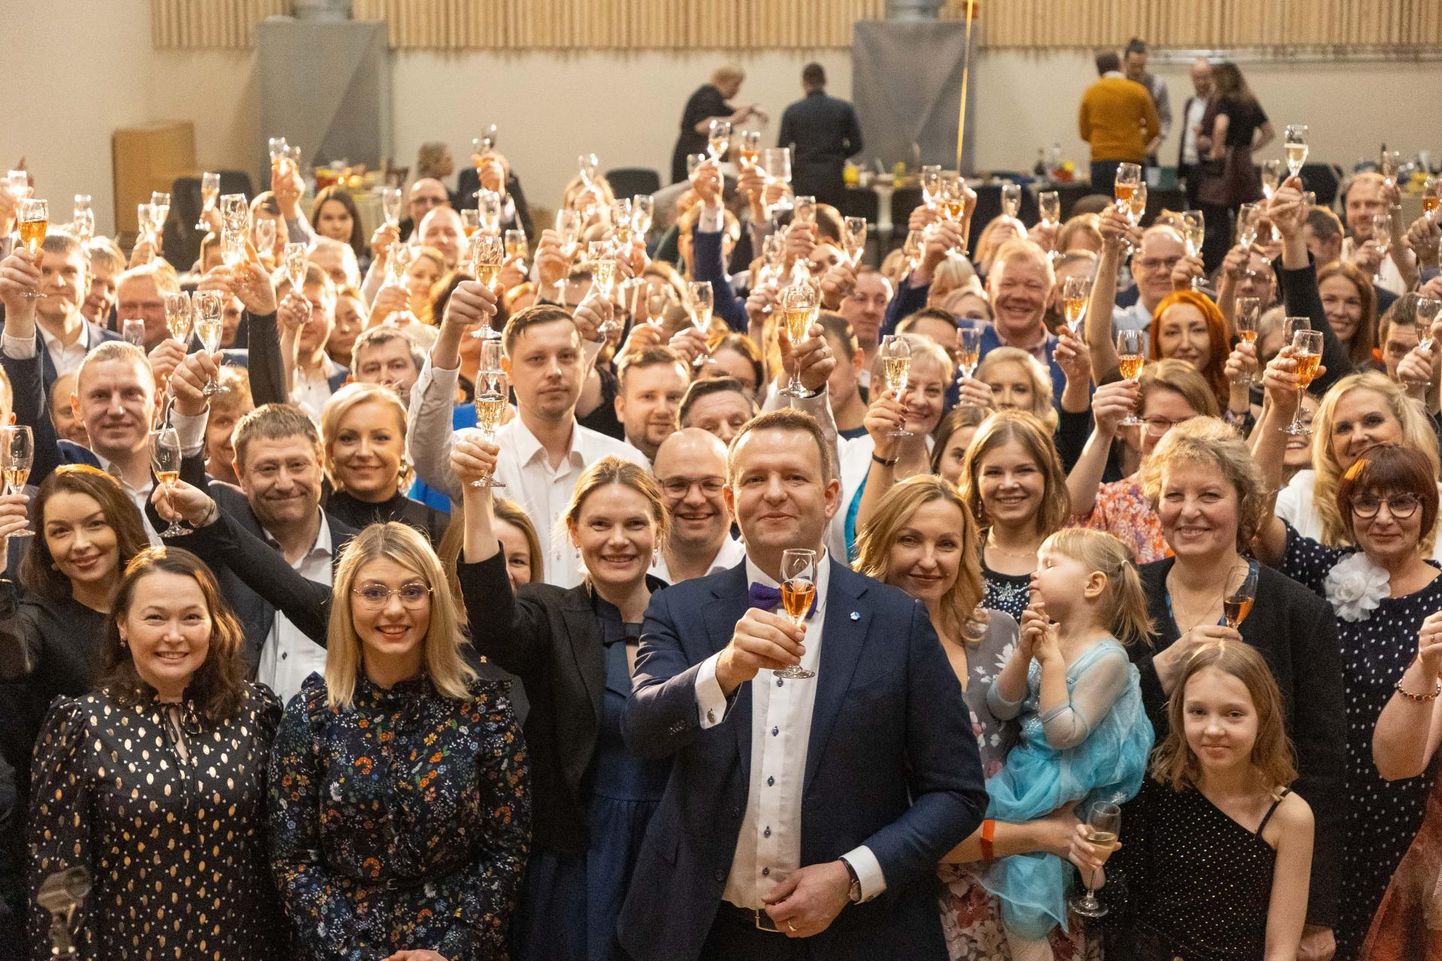 Möödunud aastal tähistas Lauri Läänemets Väätsa rahvamajas oma 40. sünnipäeva, millest võttis osa paarsada inimest.